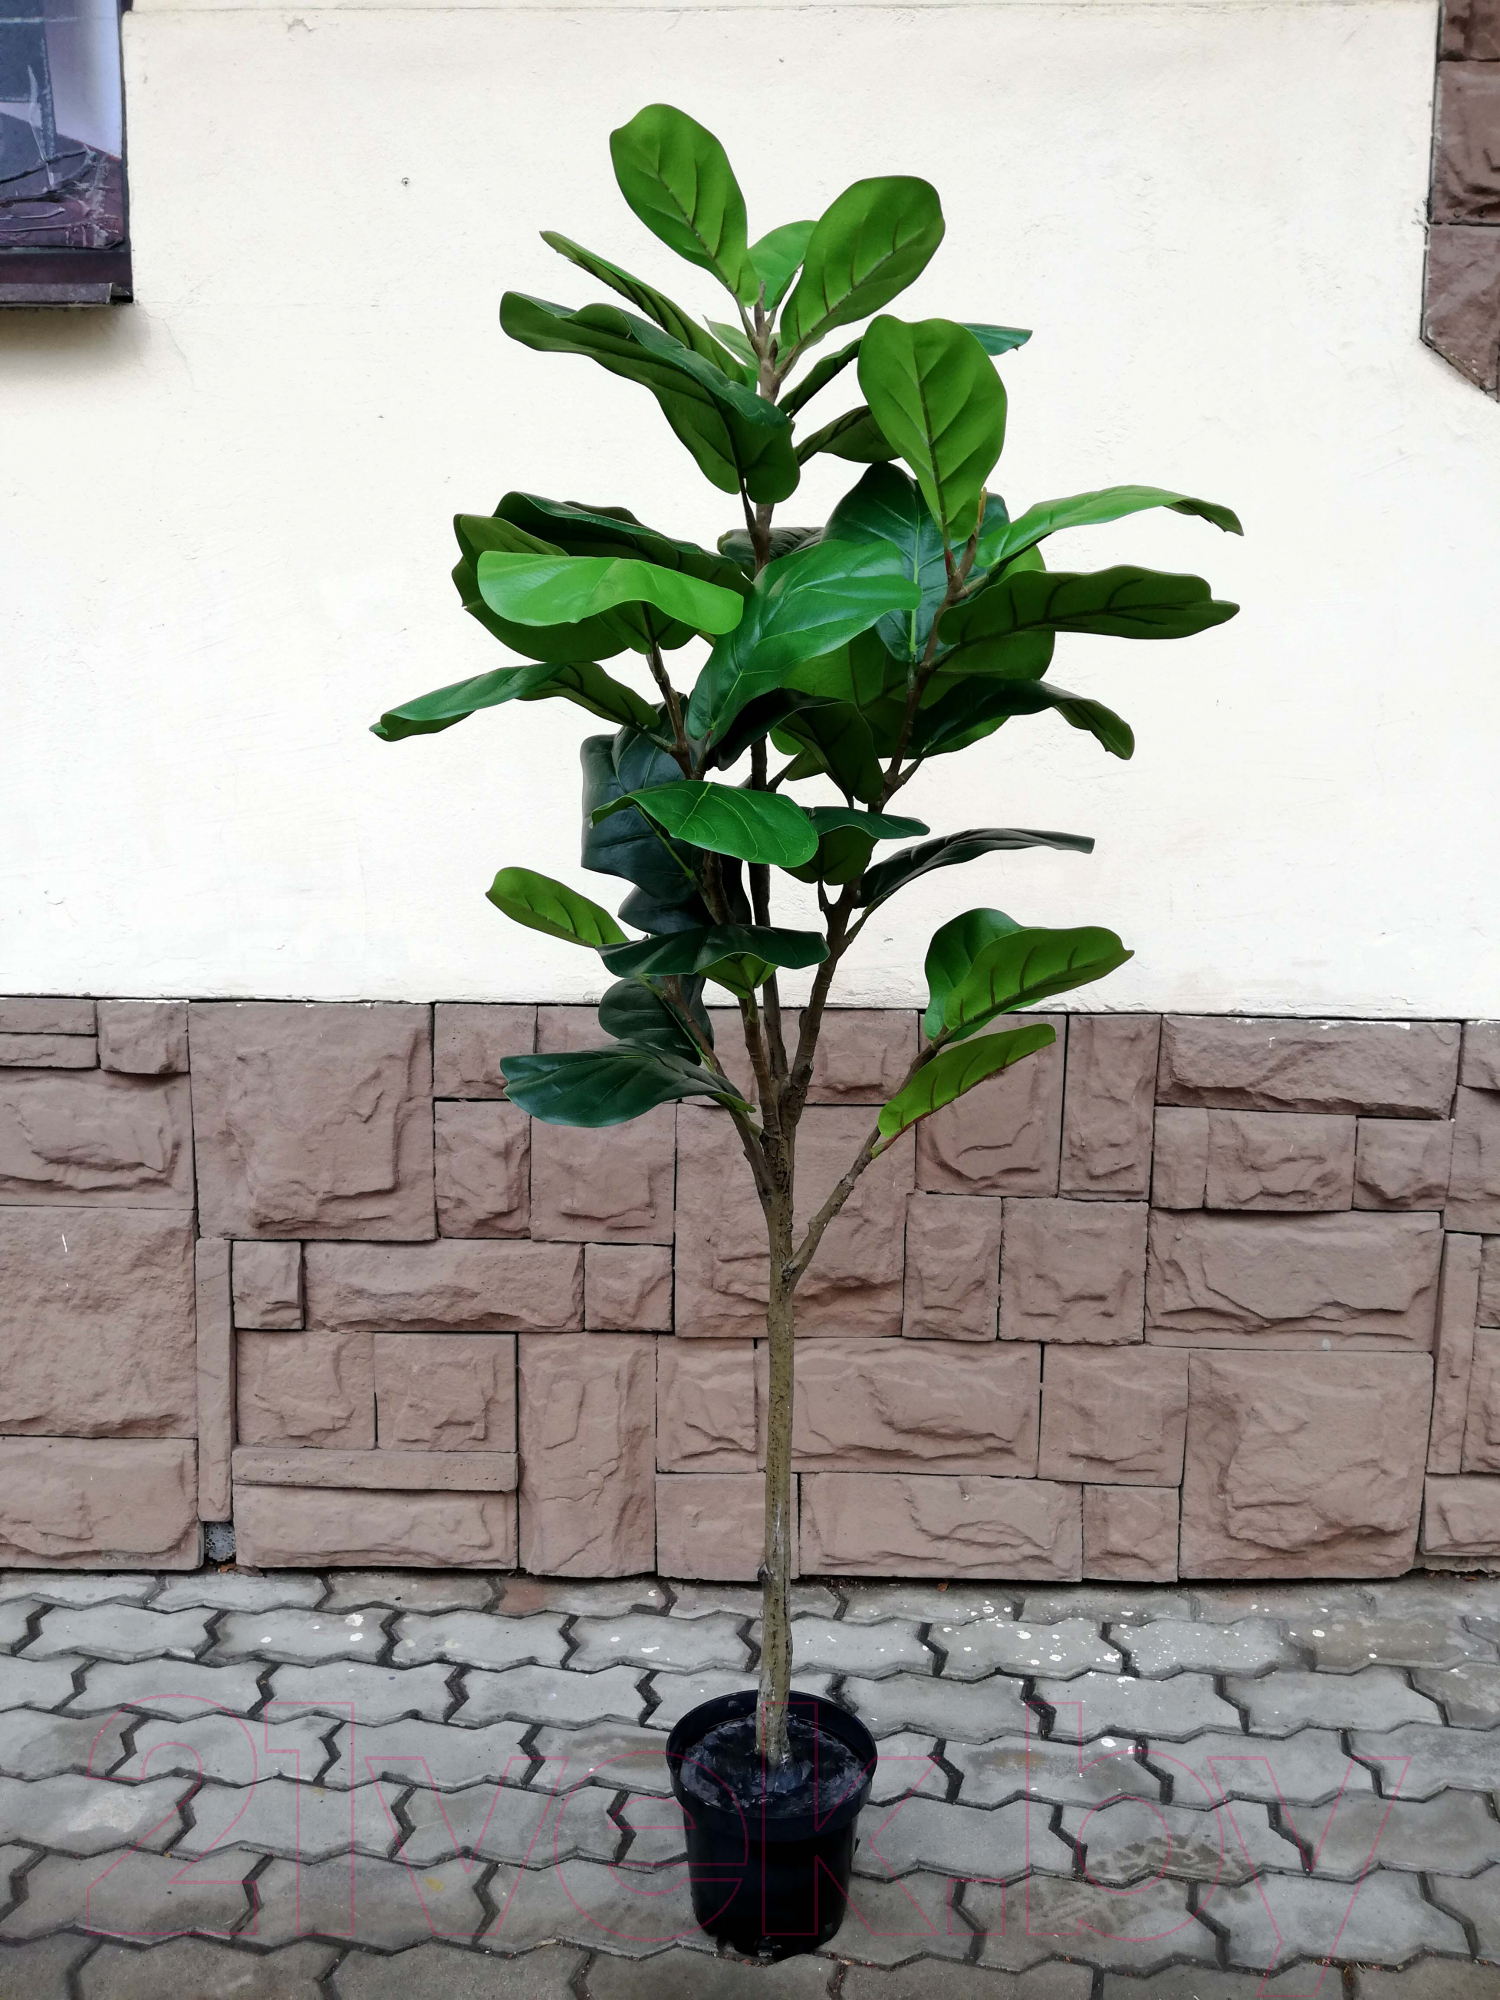 Искусственное растение ForGarden Ficus Лирата / BN10796